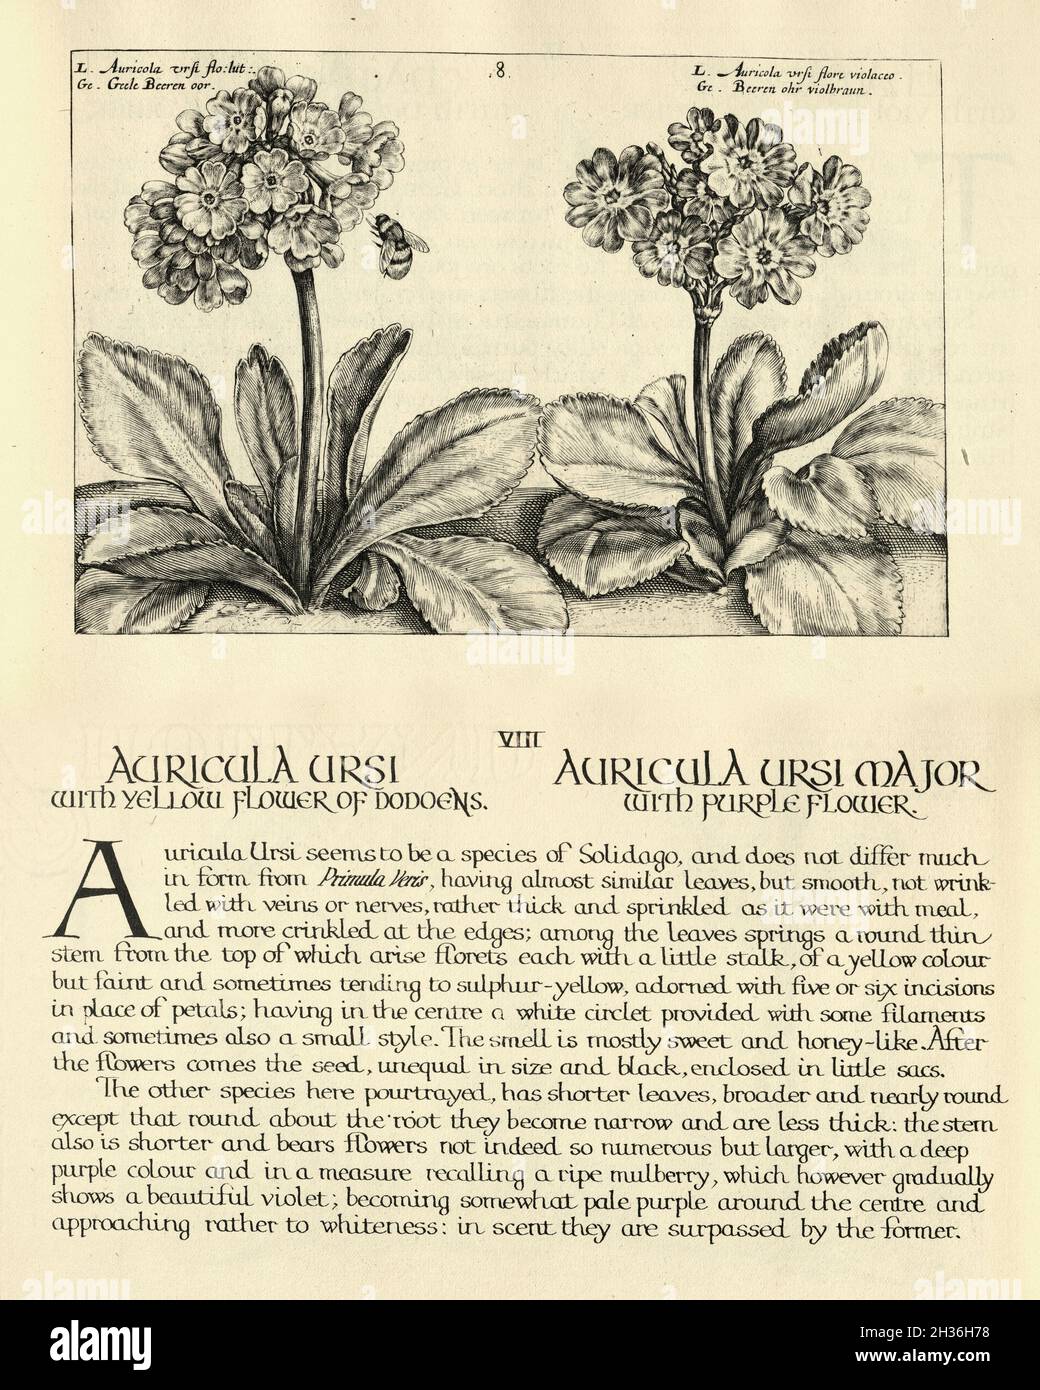 Botanischer Druck von Auricula ursi und Auricula ursi major aus Hortus Floridus von Crispin de Passe, Vintage Illustration Stockfoto